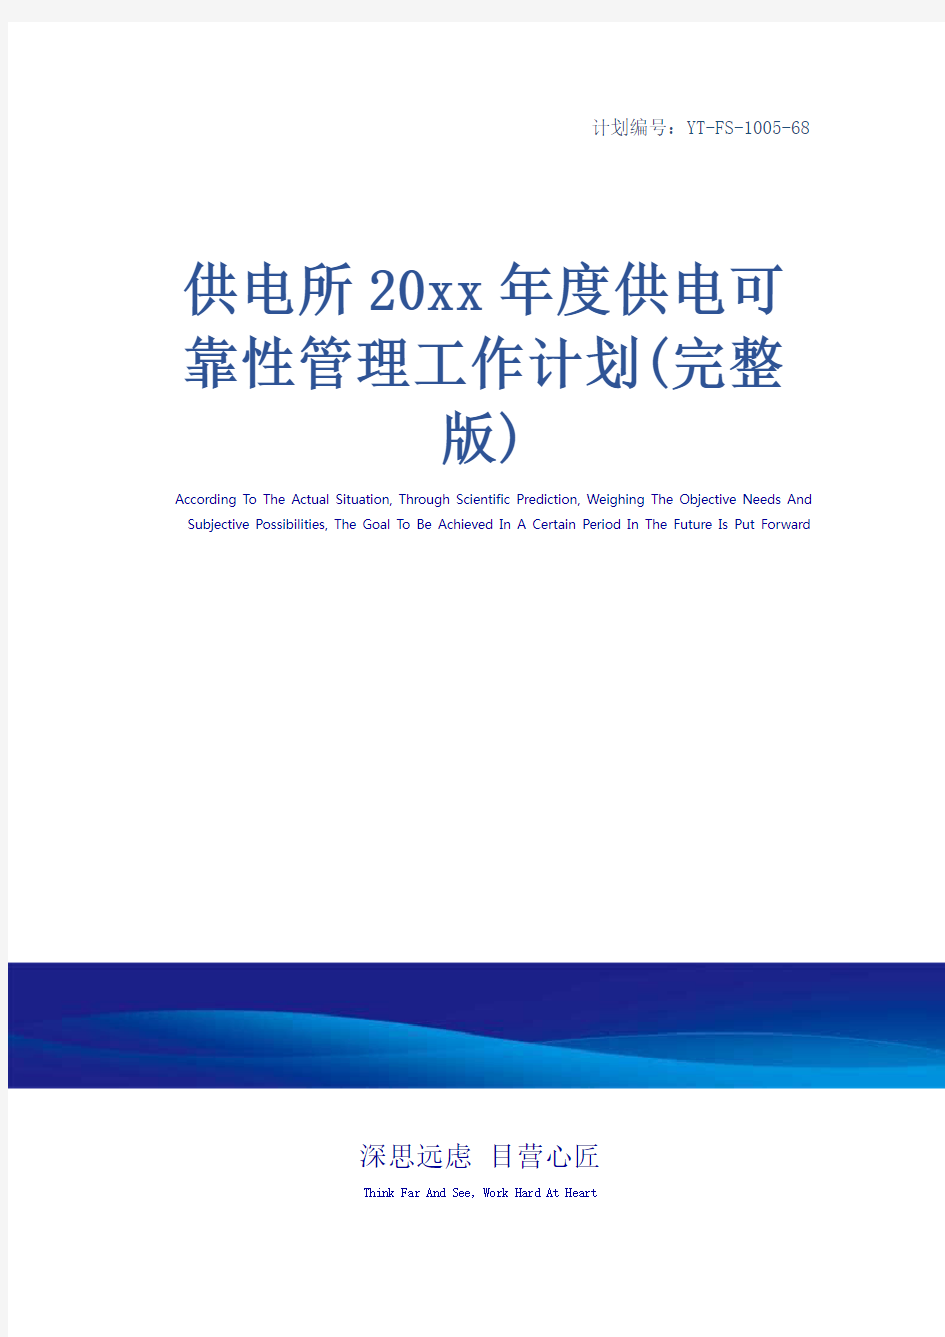 供电所20xx年度供电可靠性管理工作计划(完整版)